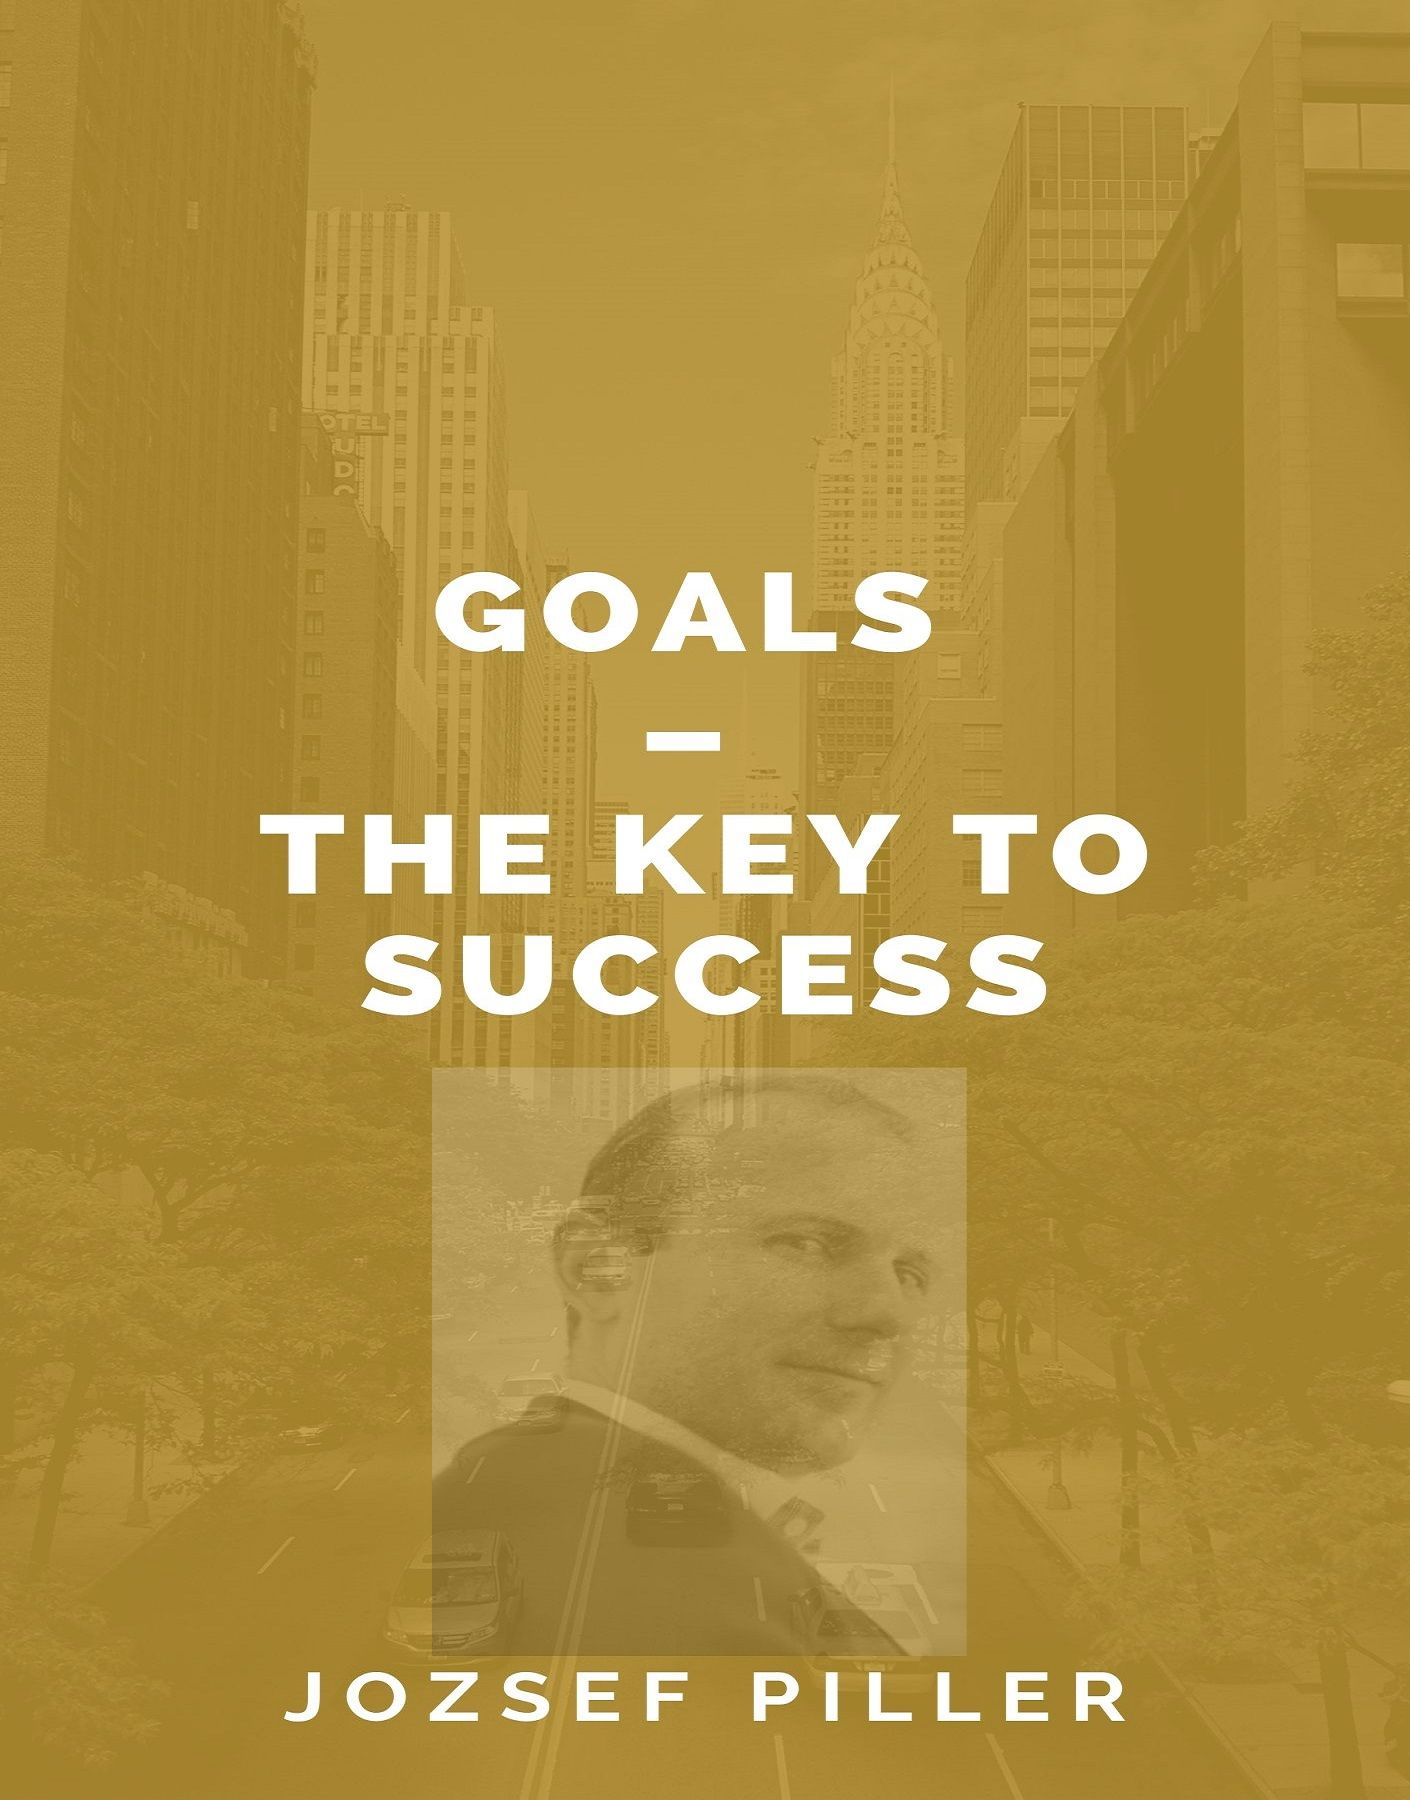 Goals – The Key to Success, lydbog af Jozsef Piller